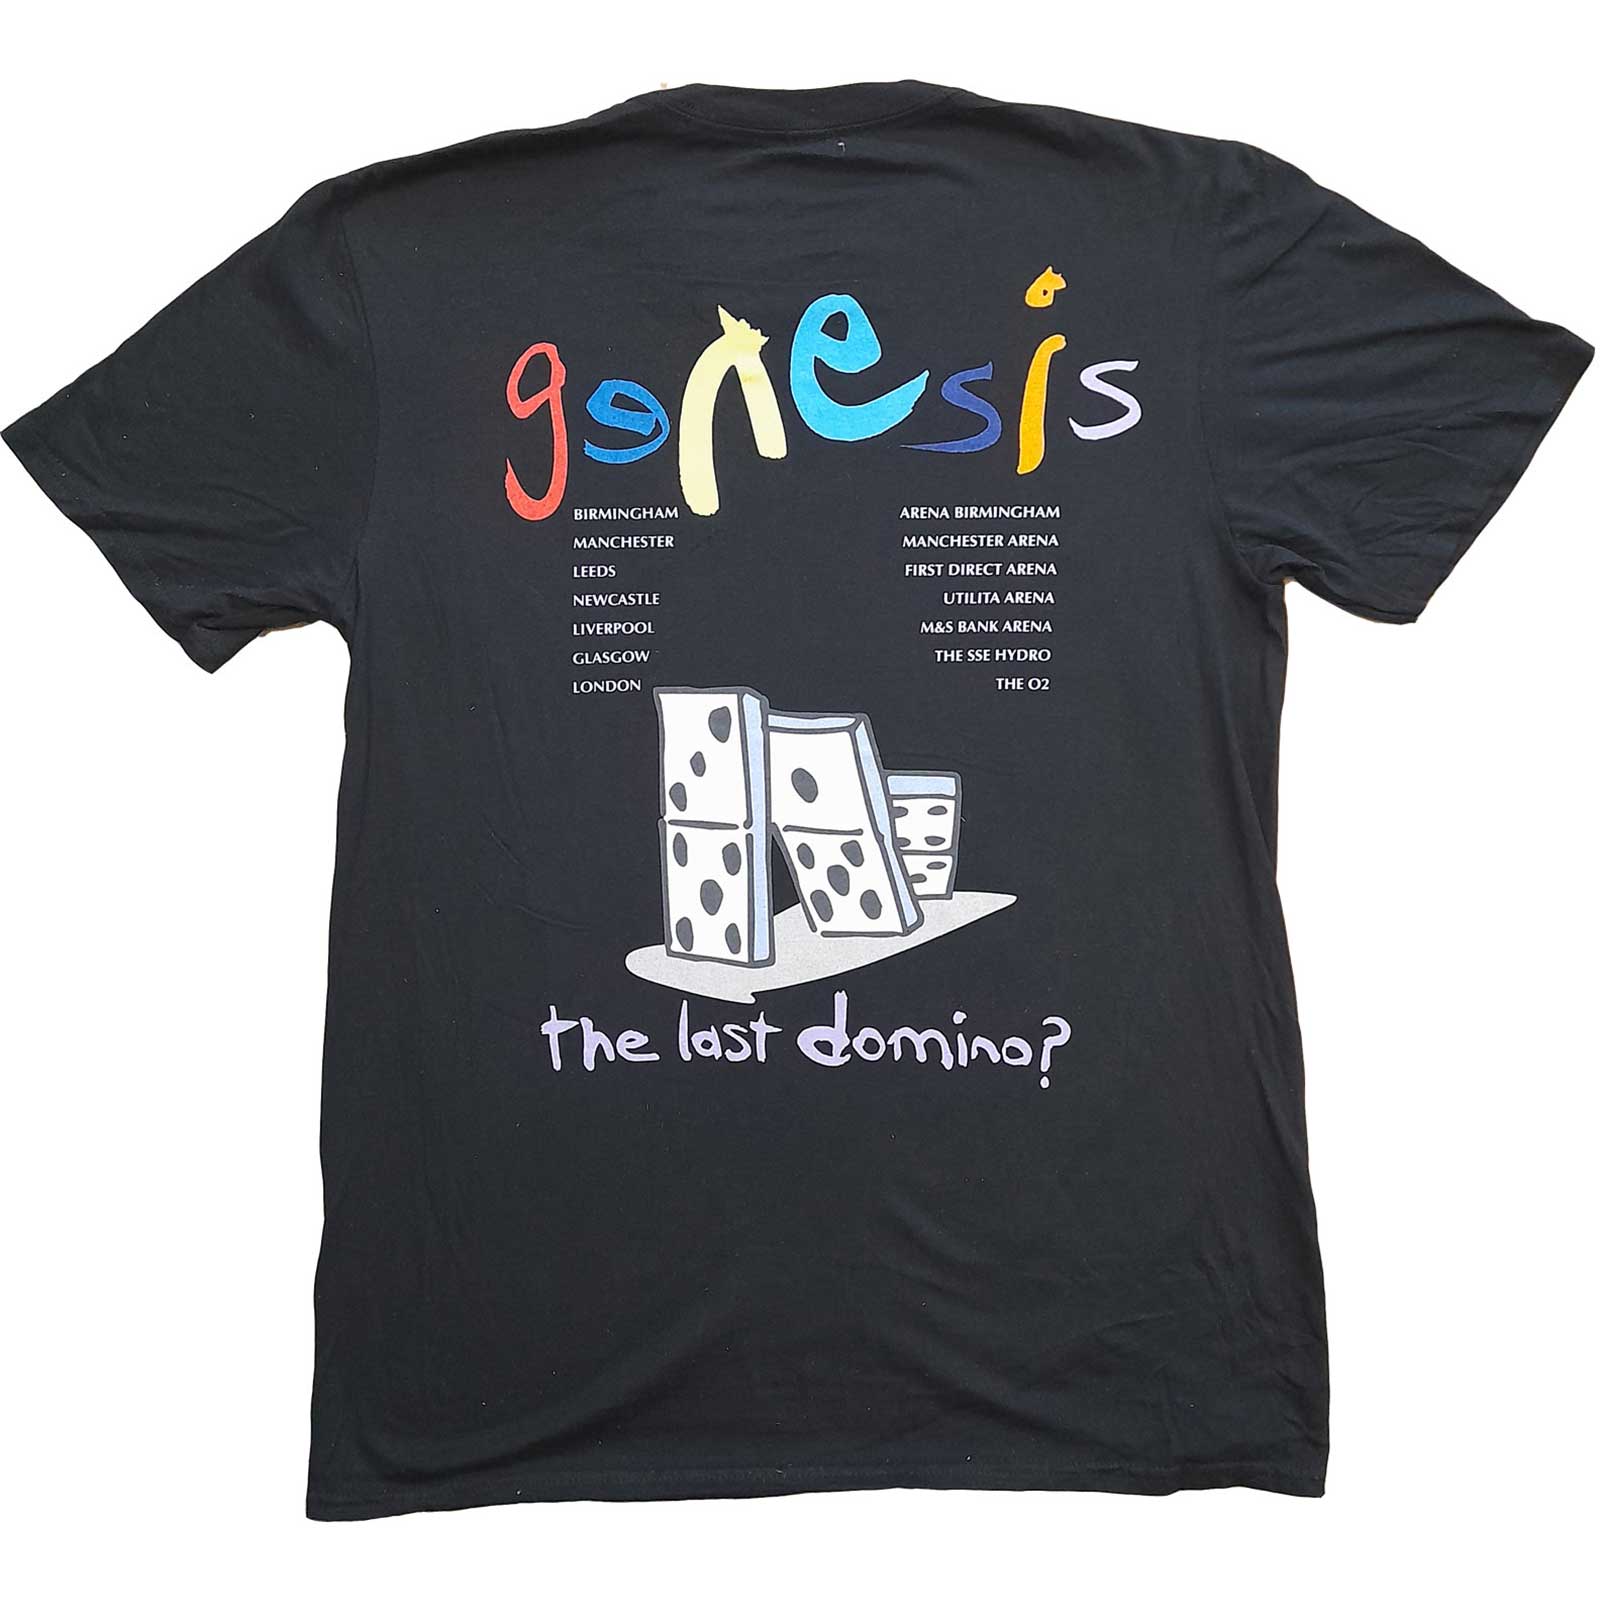 (ジェネシス) Genesis オフィシャル商品 ユニセックス The Last Domino Tシャツ バックプリント コットン 半袖 トップス 【海外通販】